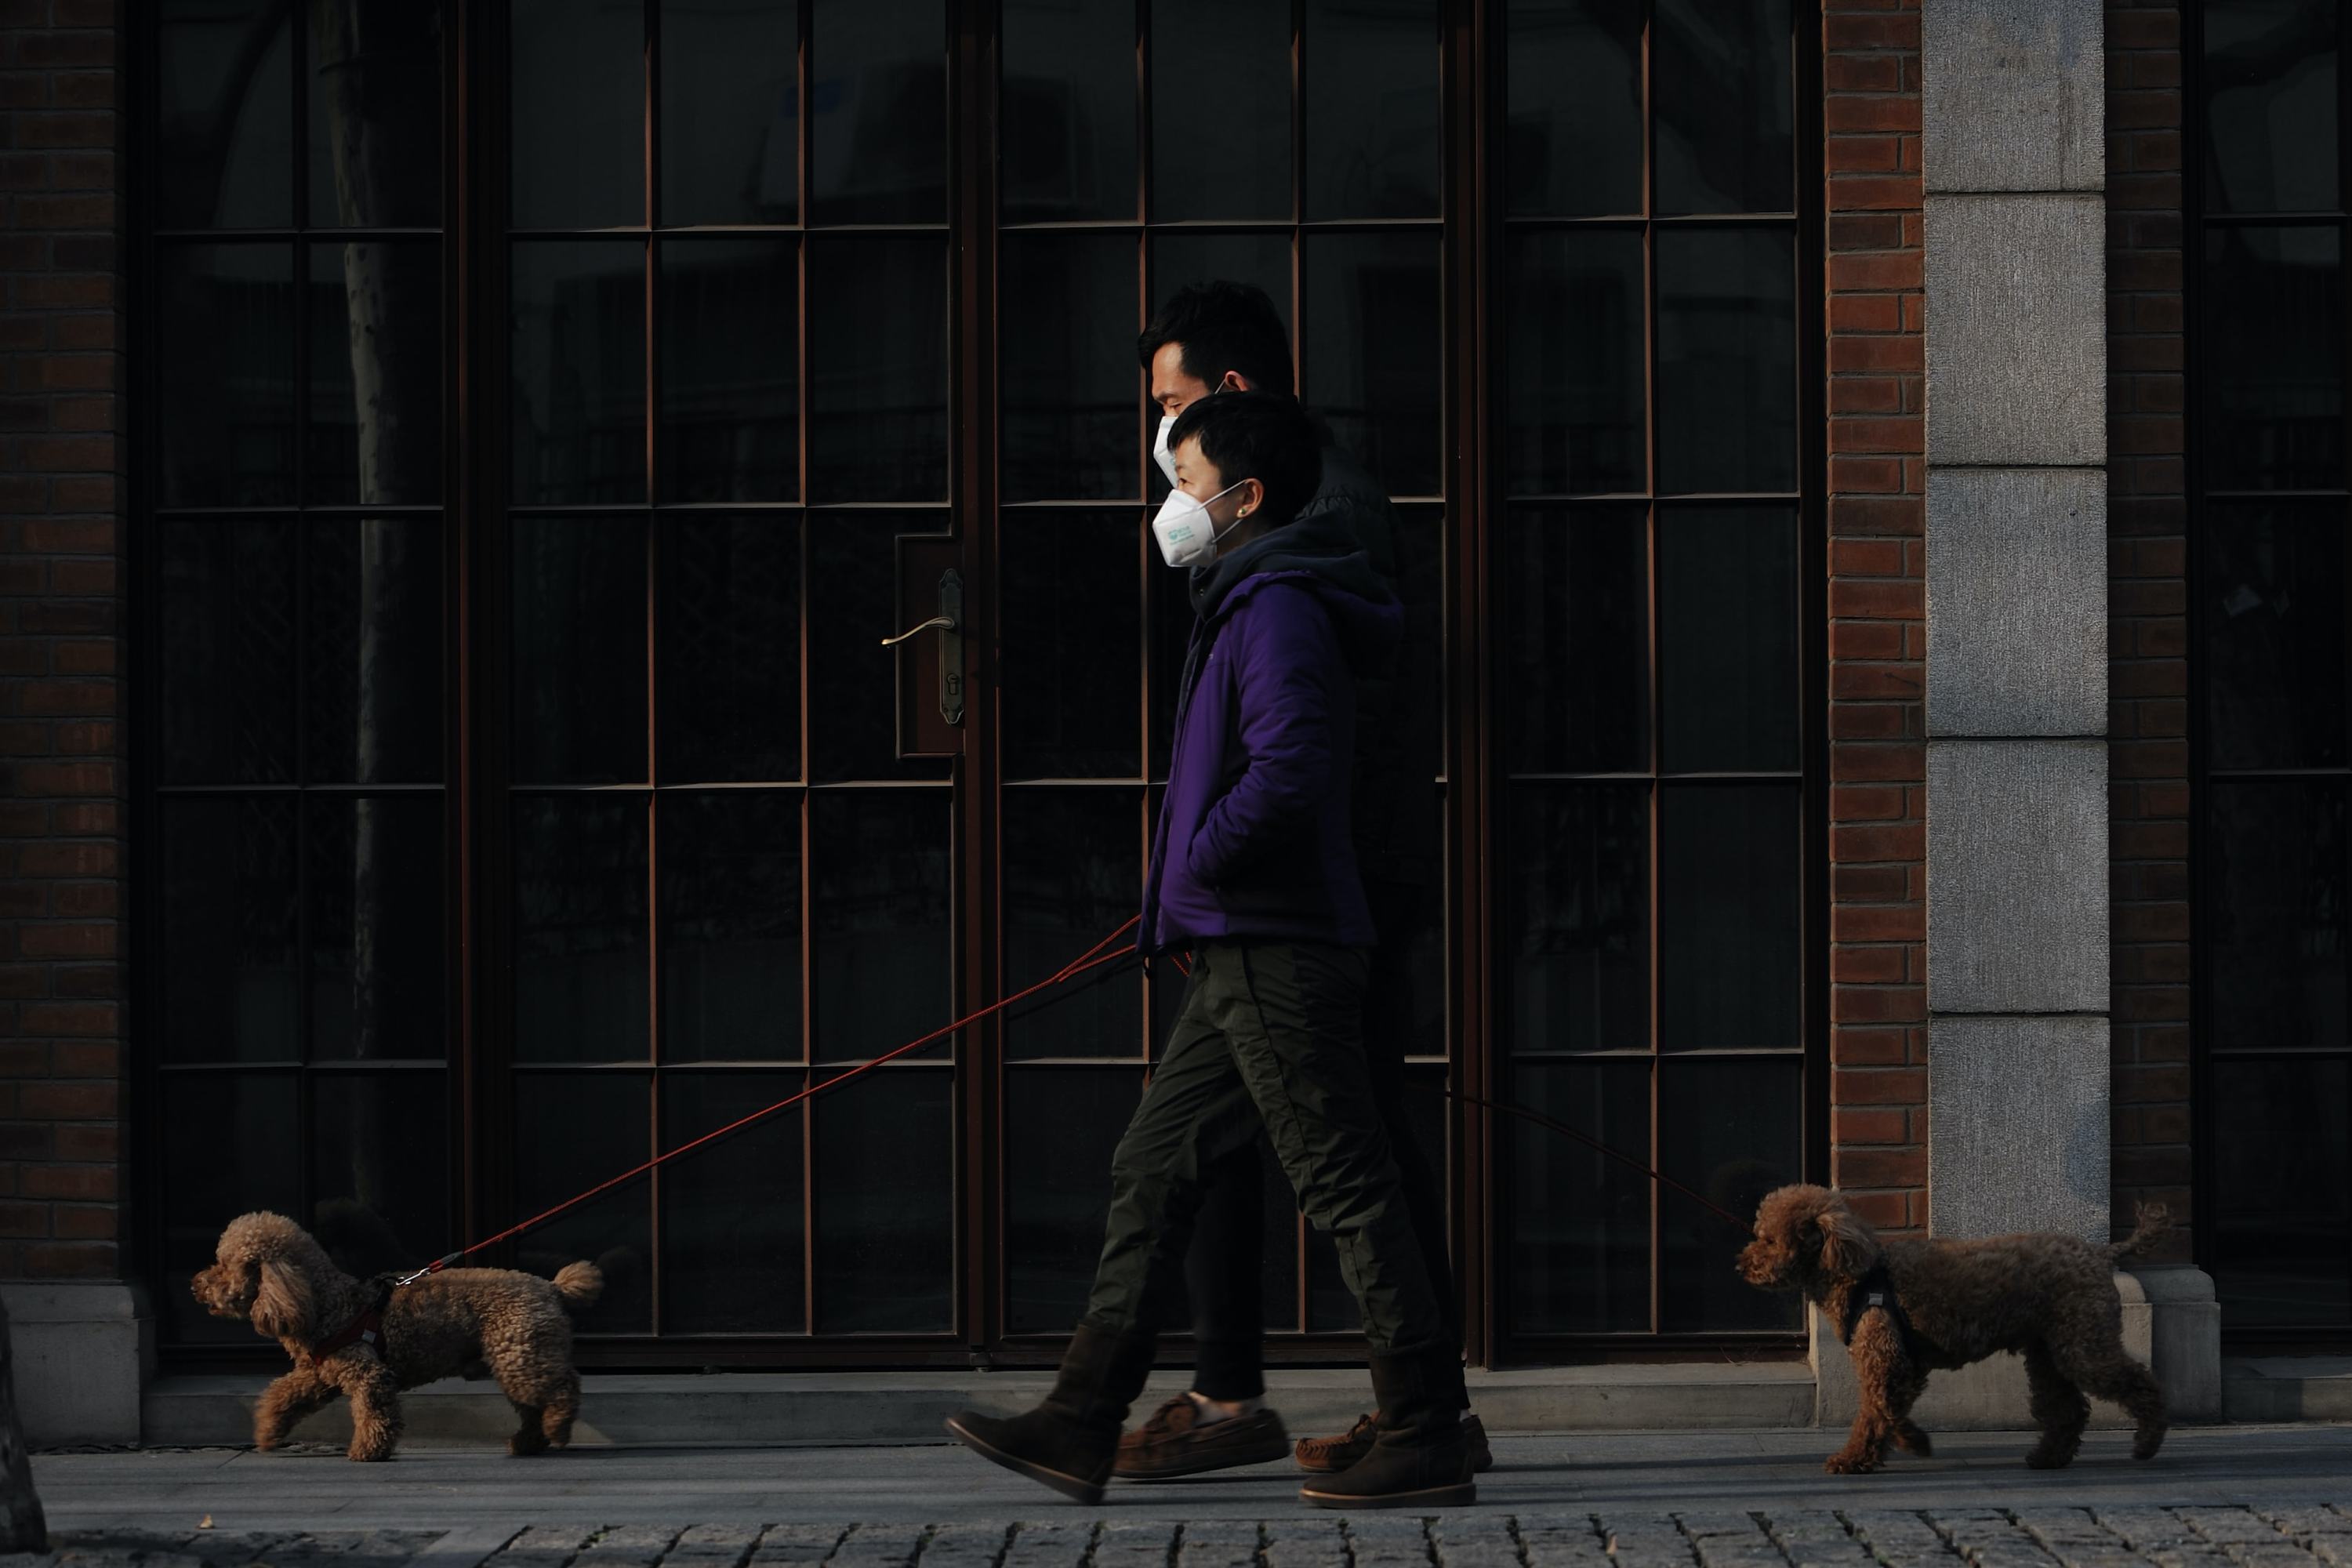 من الأرشيف: في شنغهاي الصينية، شخصان يمشيان كلبيهما خلال جائحة كوفيد-19 في كانون الثاني / يناير 2021.